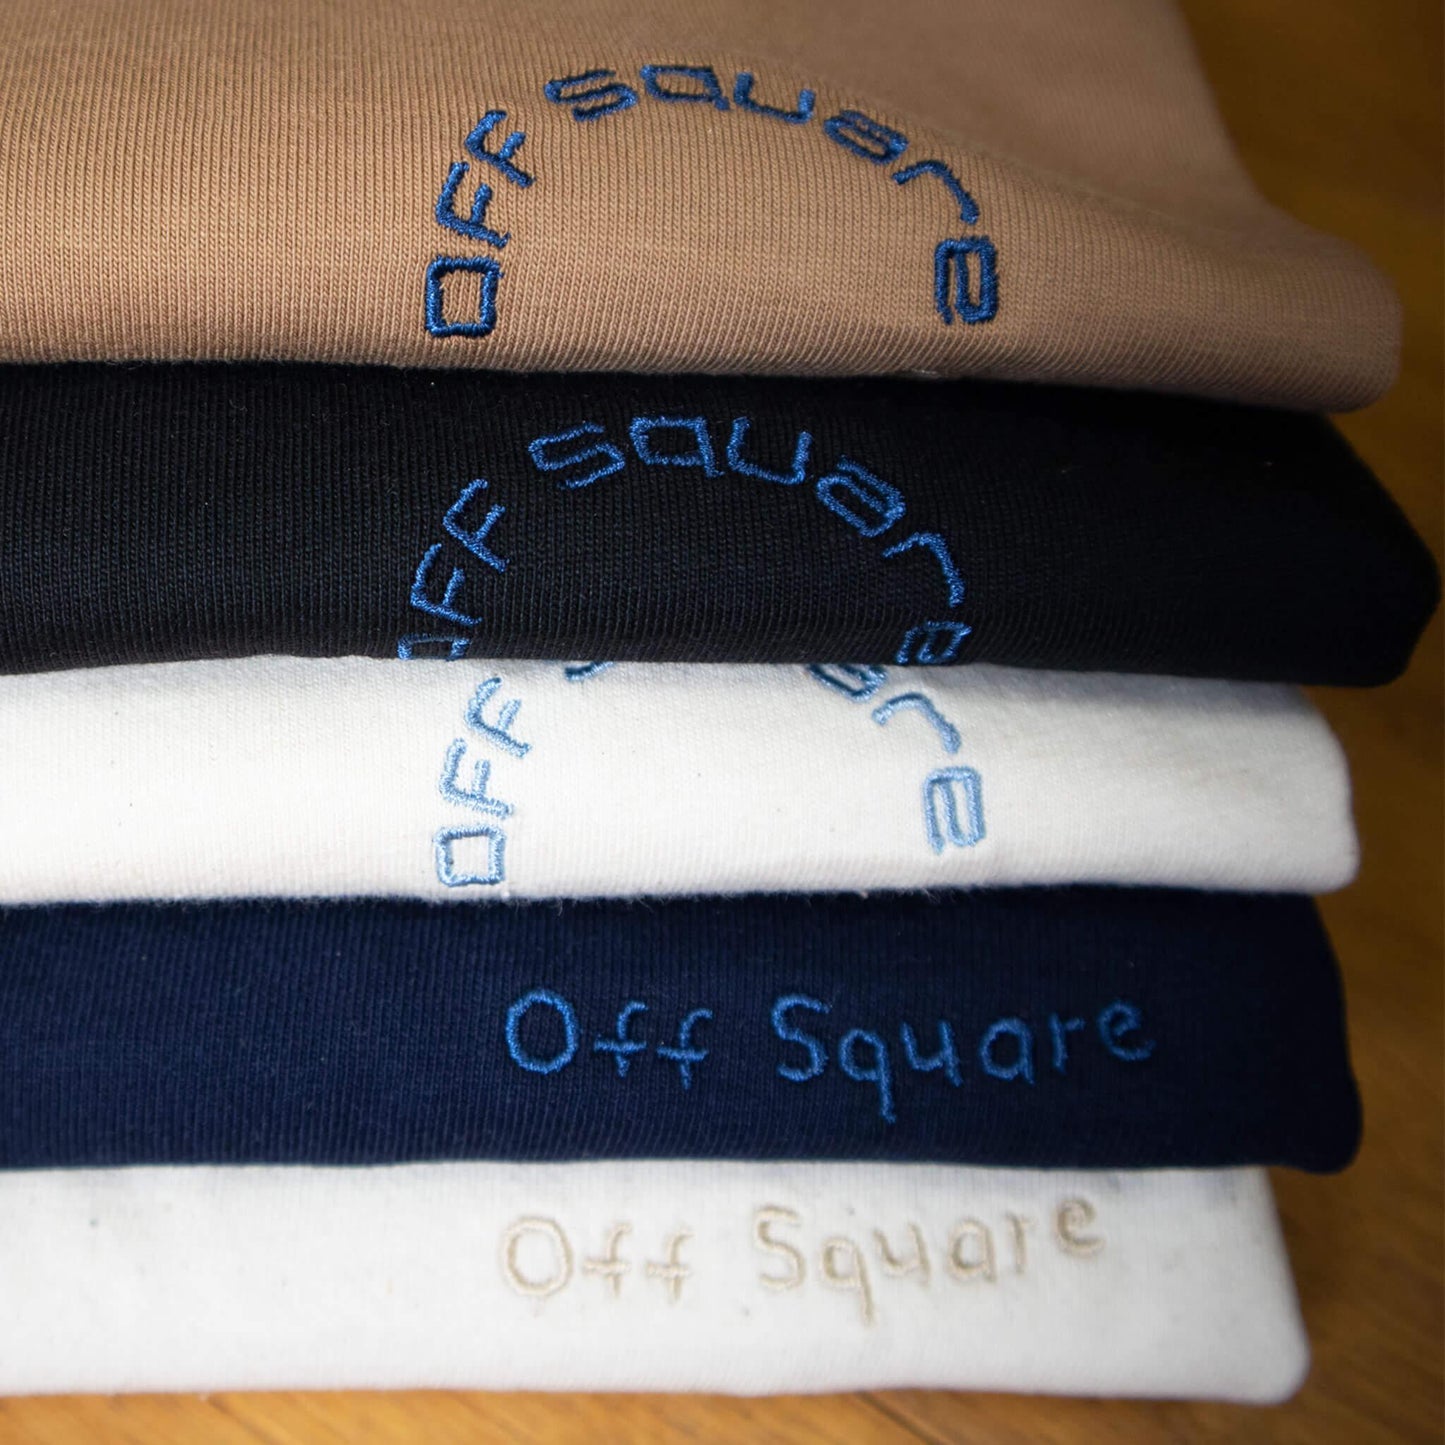 Offsquare duurzaam Multi Logo T-shirt - offsquareofficial